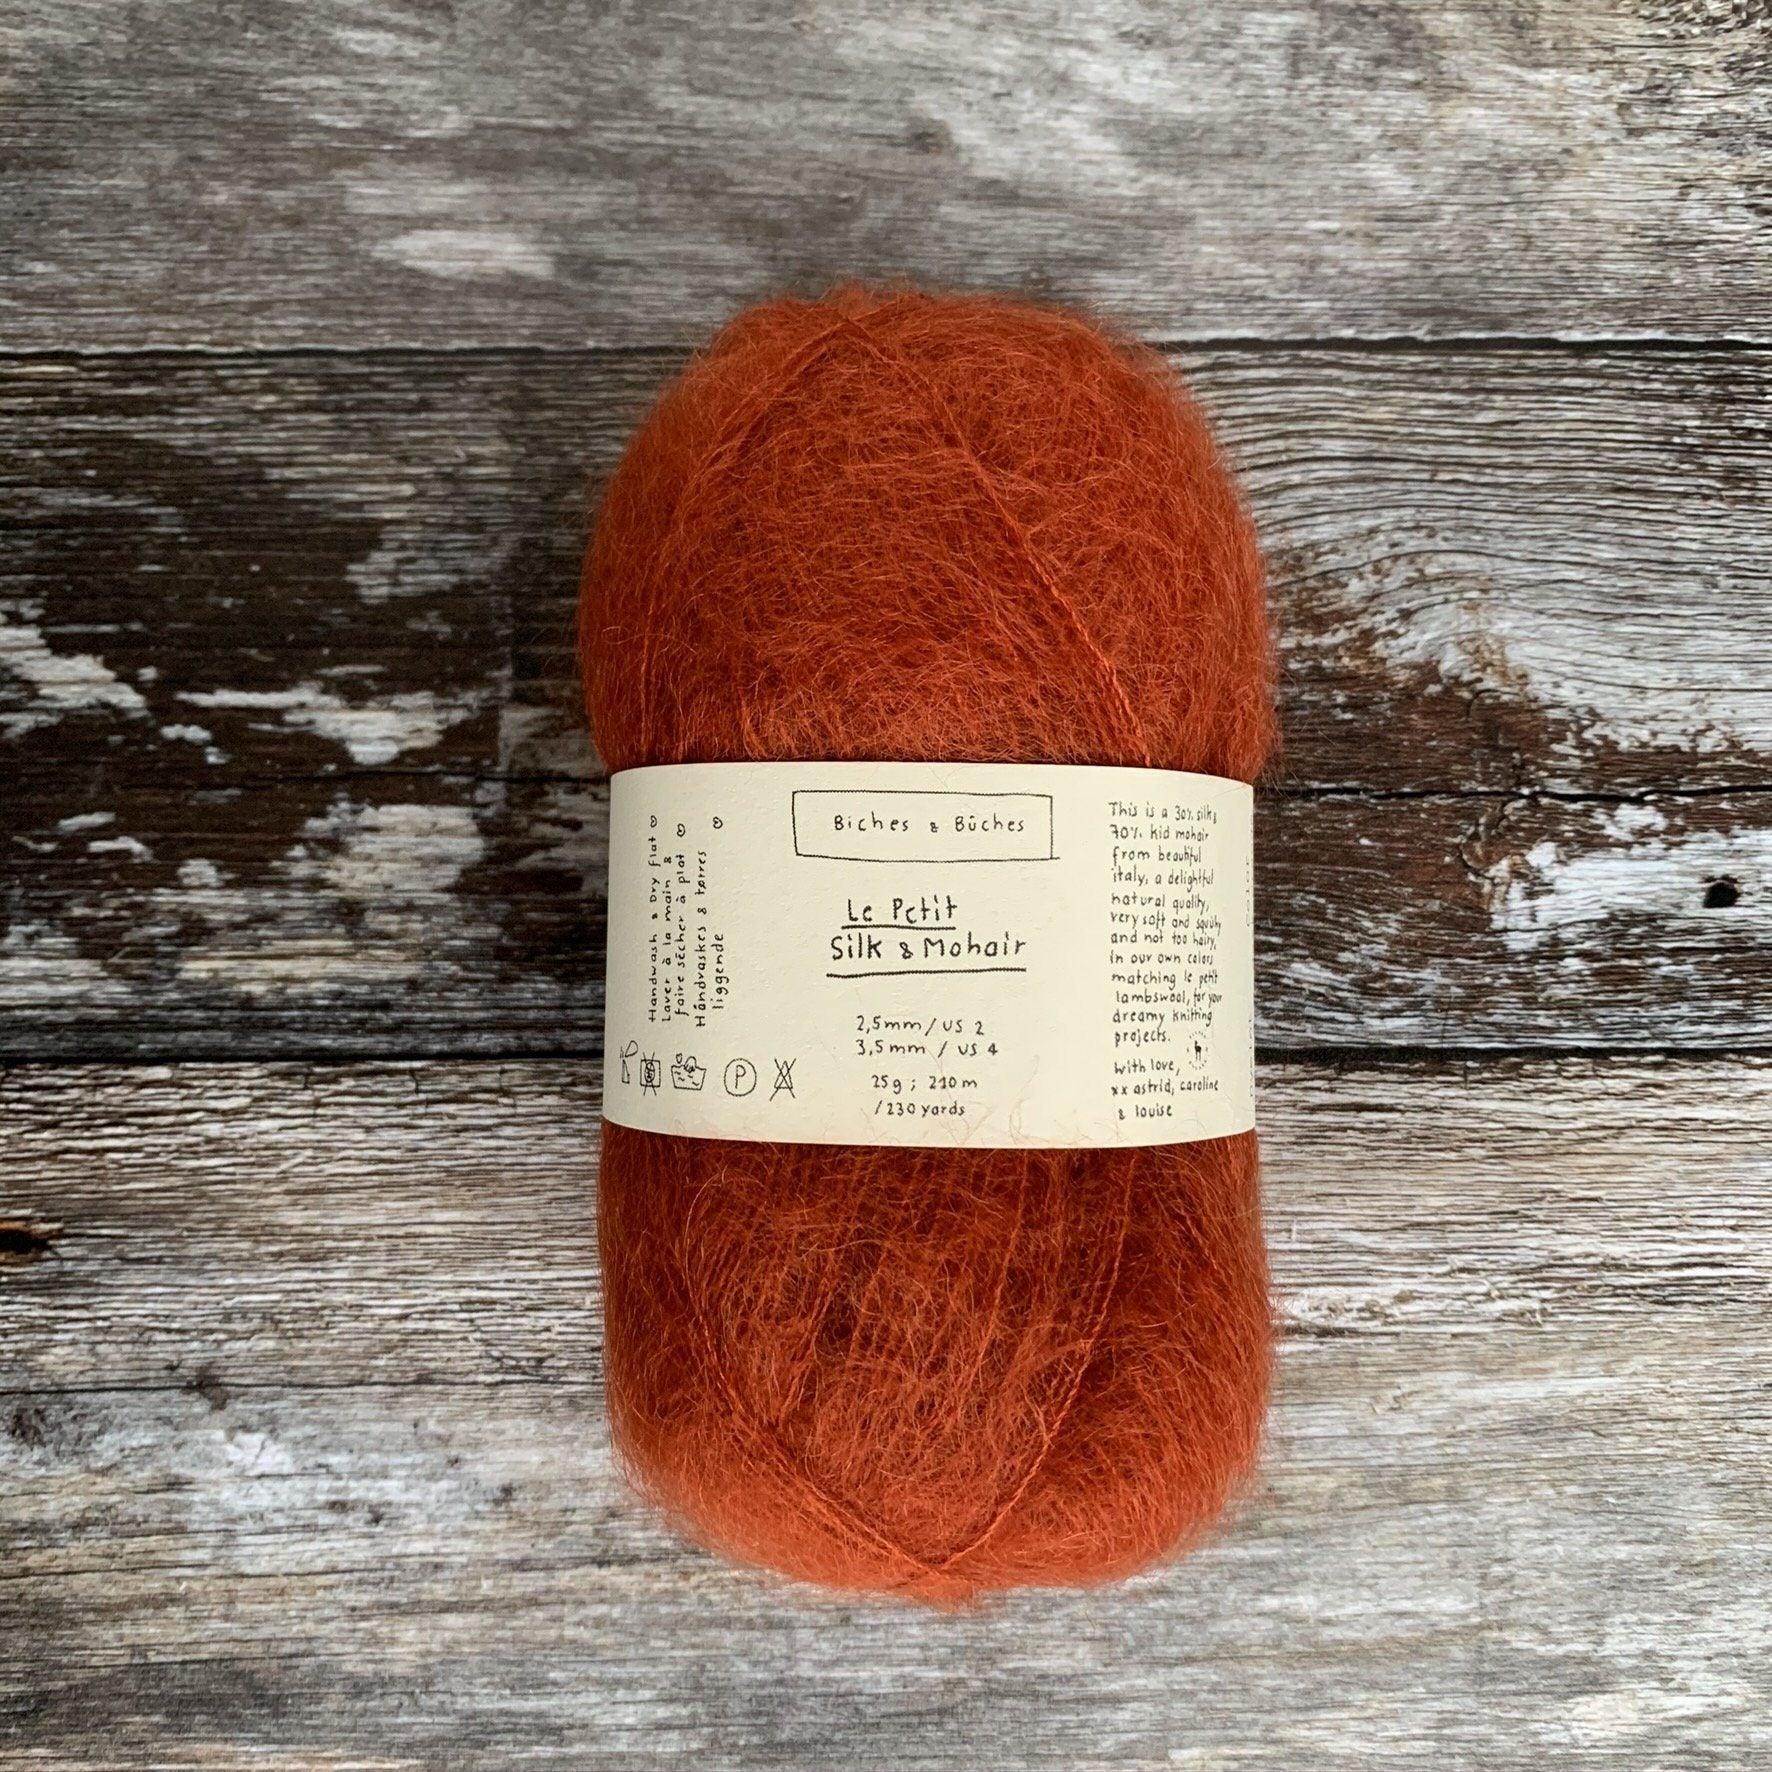 Biches & Bûches Biches & Bûches Le Petit Silk & Mohair - Dark Orange Grey - Lace Knitting Yarn